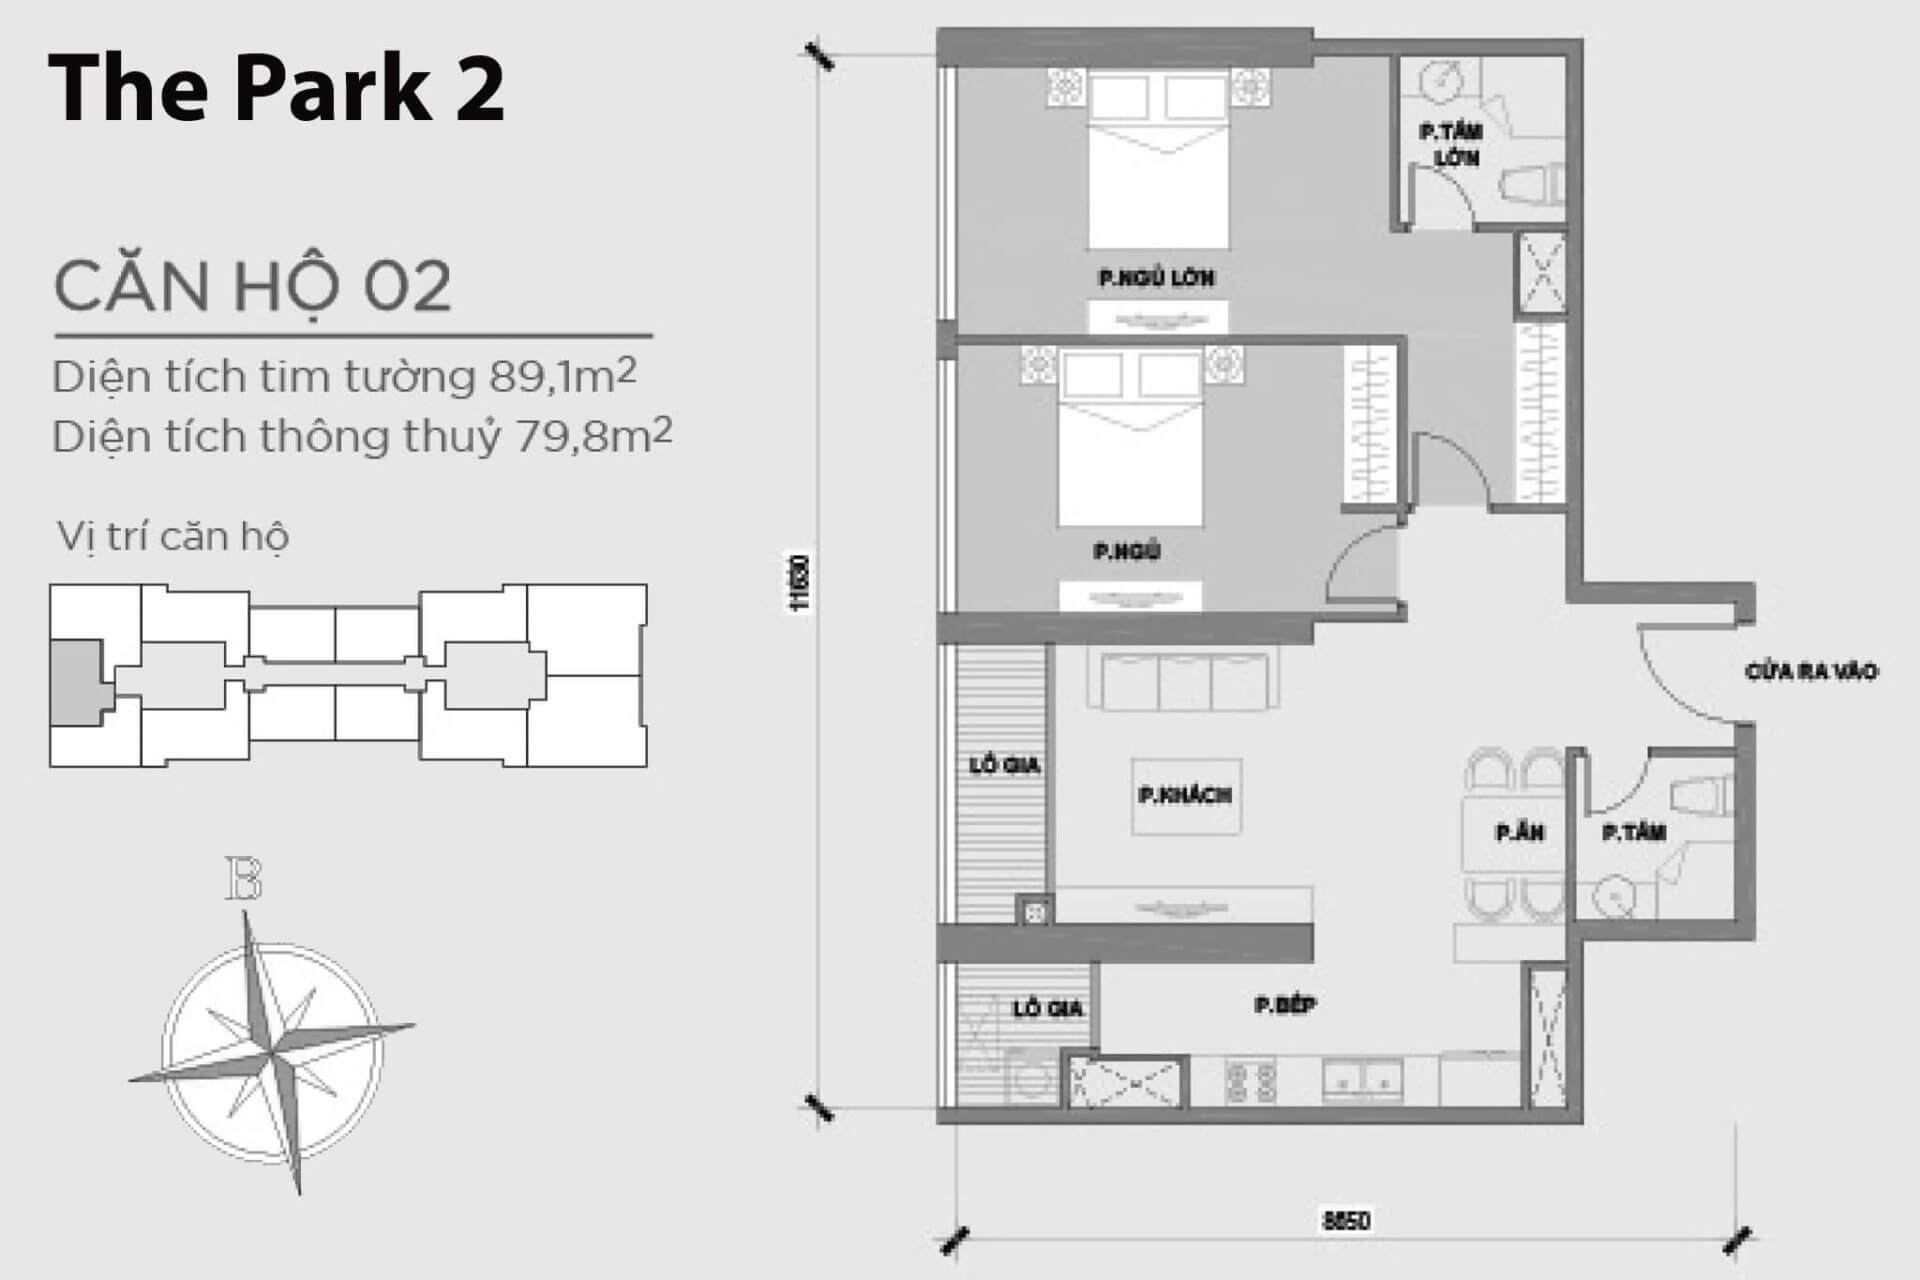 mặt bằng layout căn hộ số 02 Park 2 Vinhomes Central Park